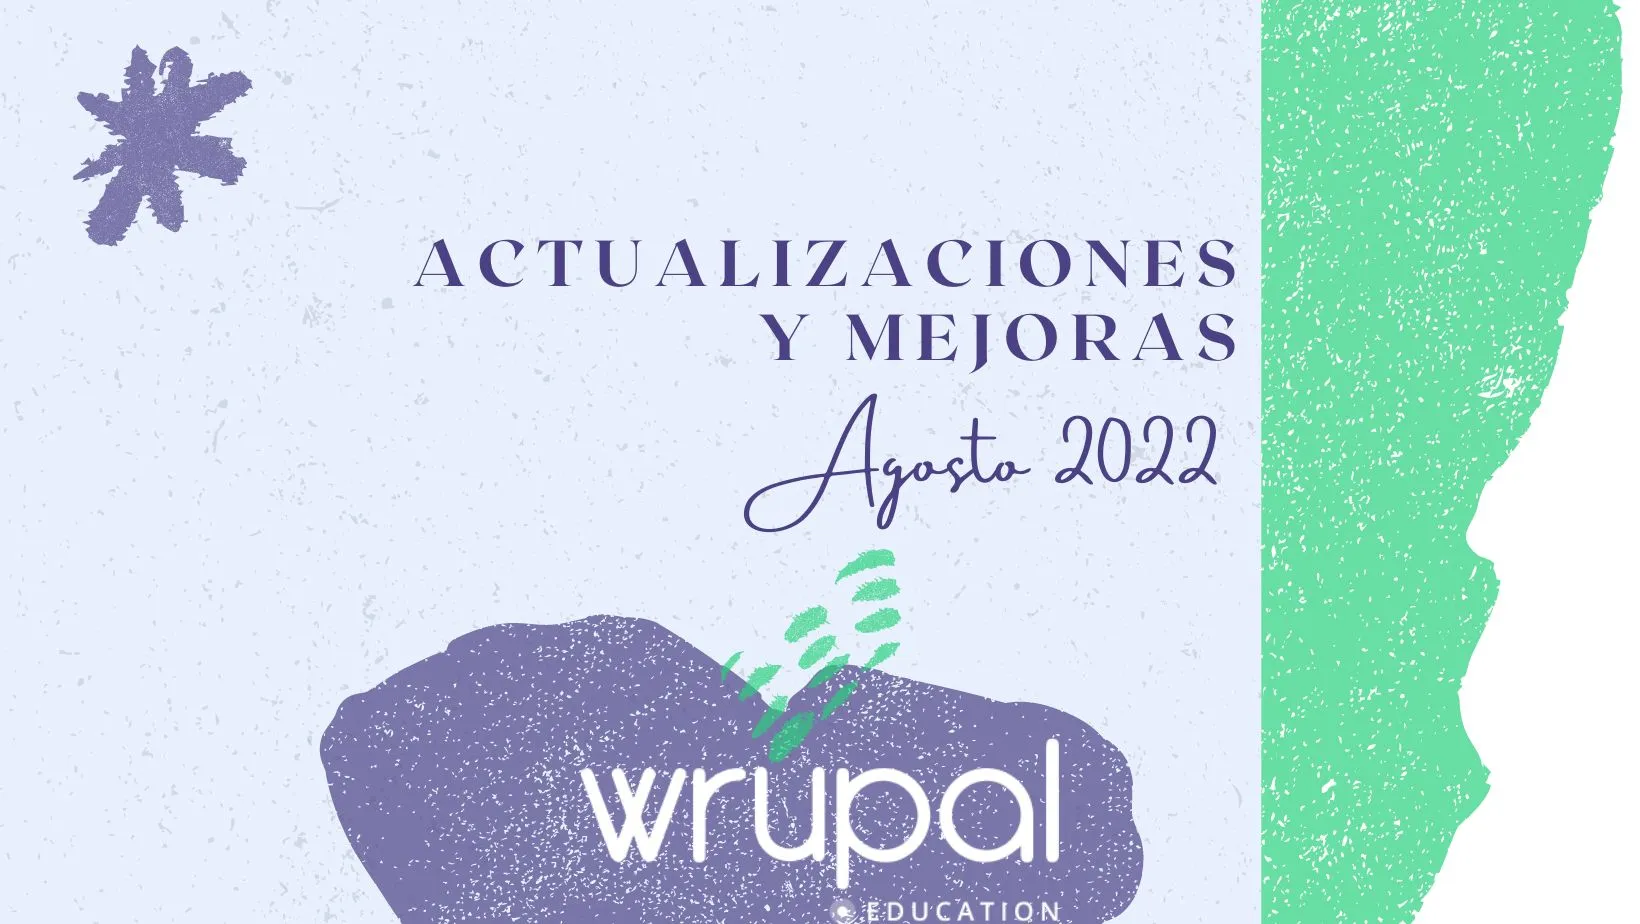 Wrupal Education: Actualizaciones y mejoras eLearning. Agosto 2022